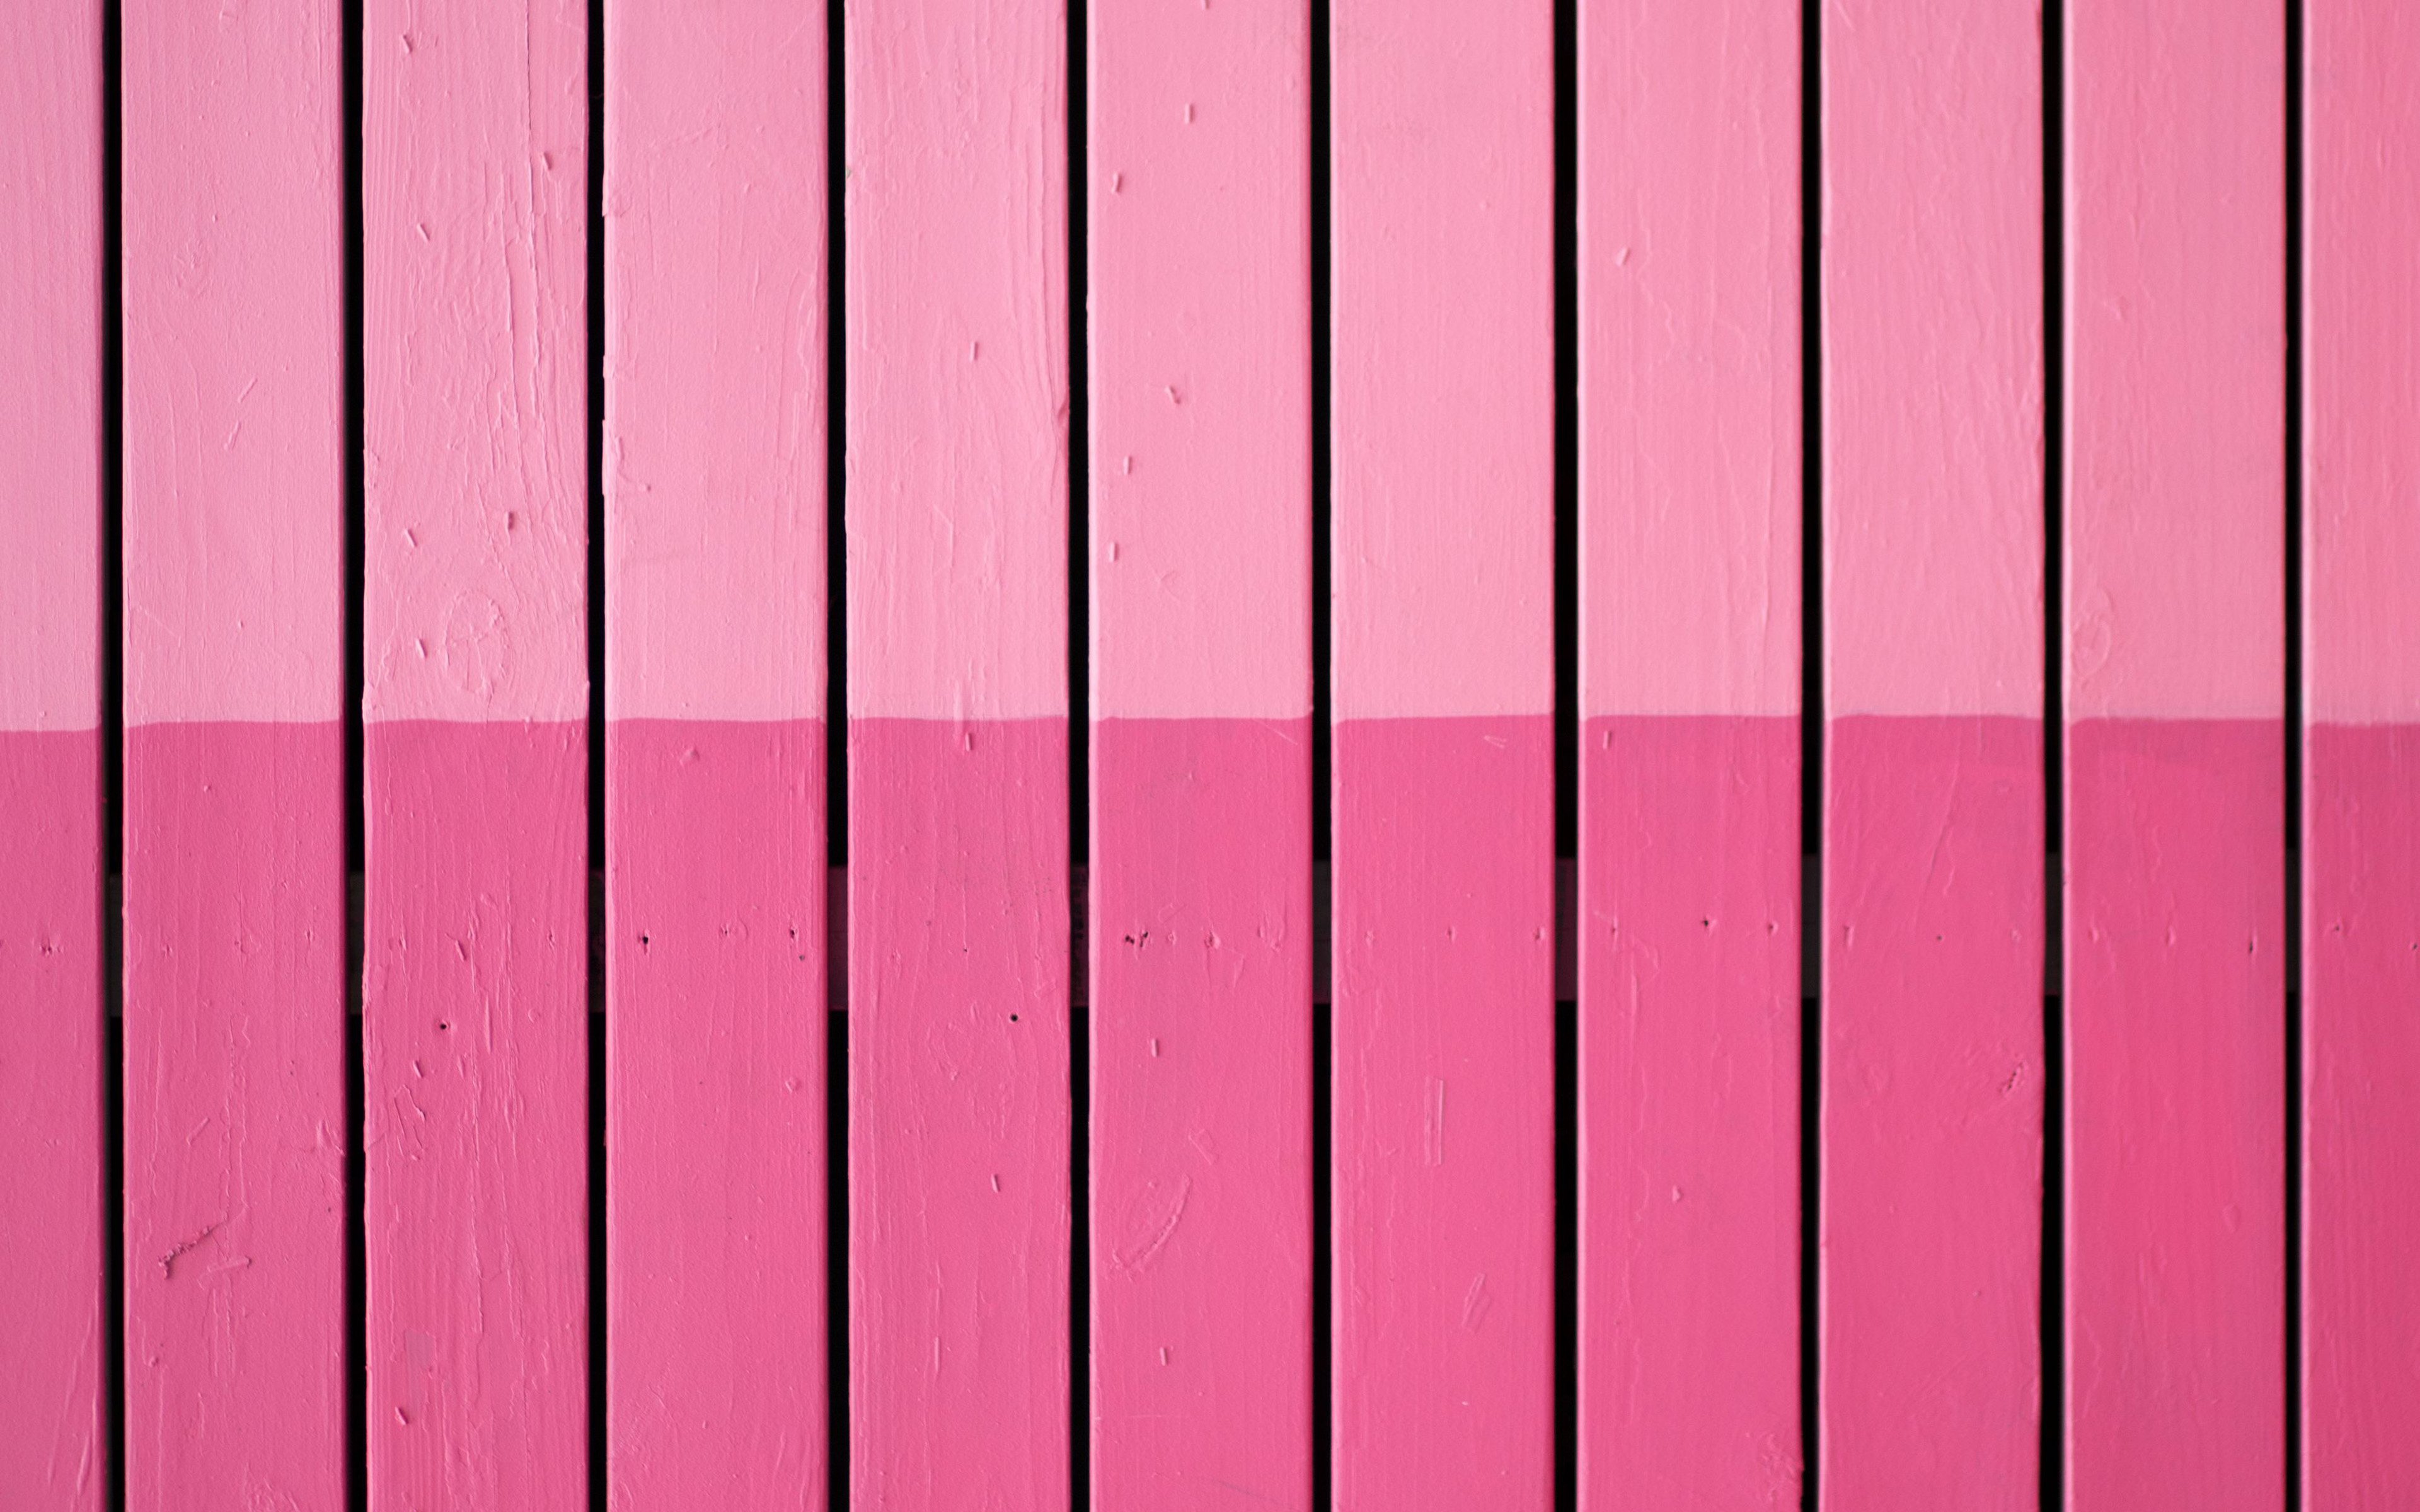 pink wooden planks, 4k, vertical wooden boards, wooden fence, pink wooden texture, wood planks, wooden textures, wooden backgrounds, pink wooden boards, wooden planks